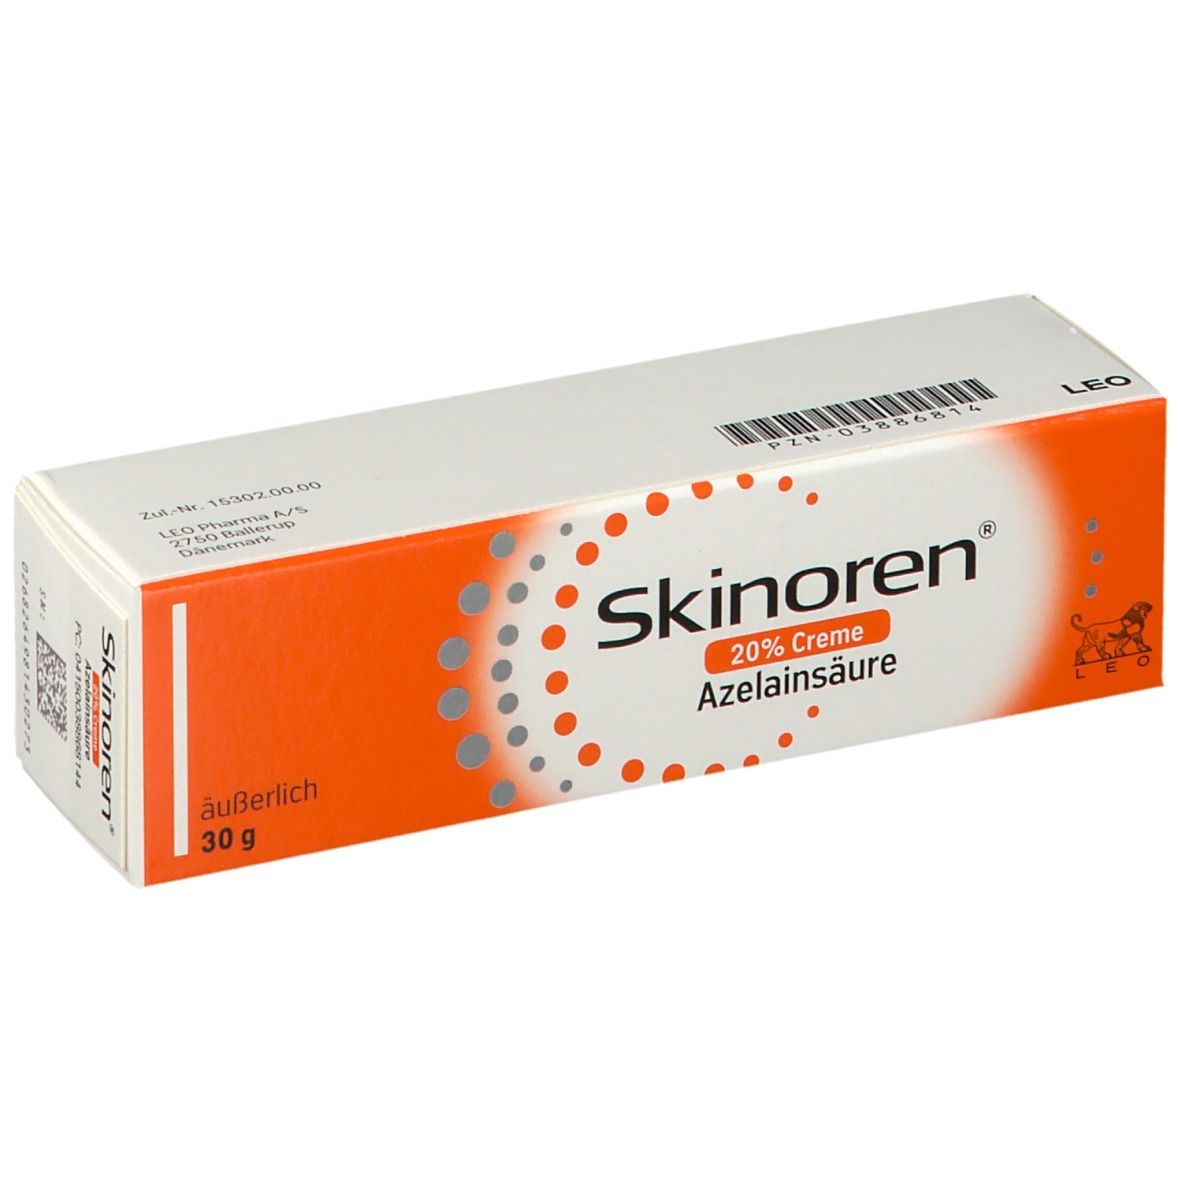 Skinoren® 20% Creme